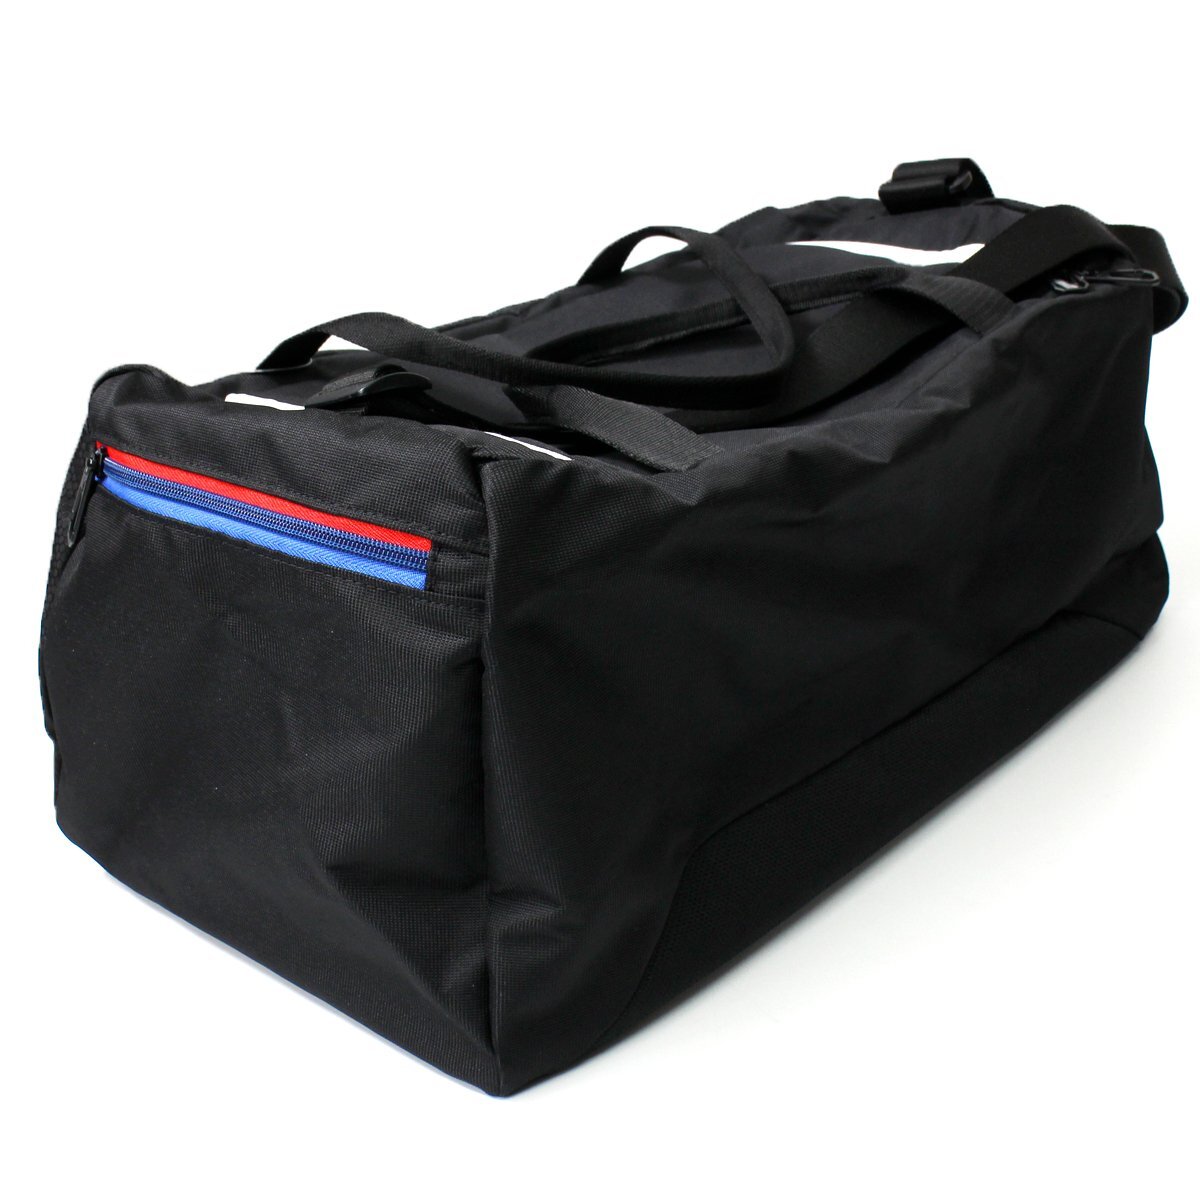  новый товар PUMA BMW Motorsport Puma большая спортивная сумка спорт сумка 32L сумка на плечо Golf BAG сумка портфель чёрный *CS1986